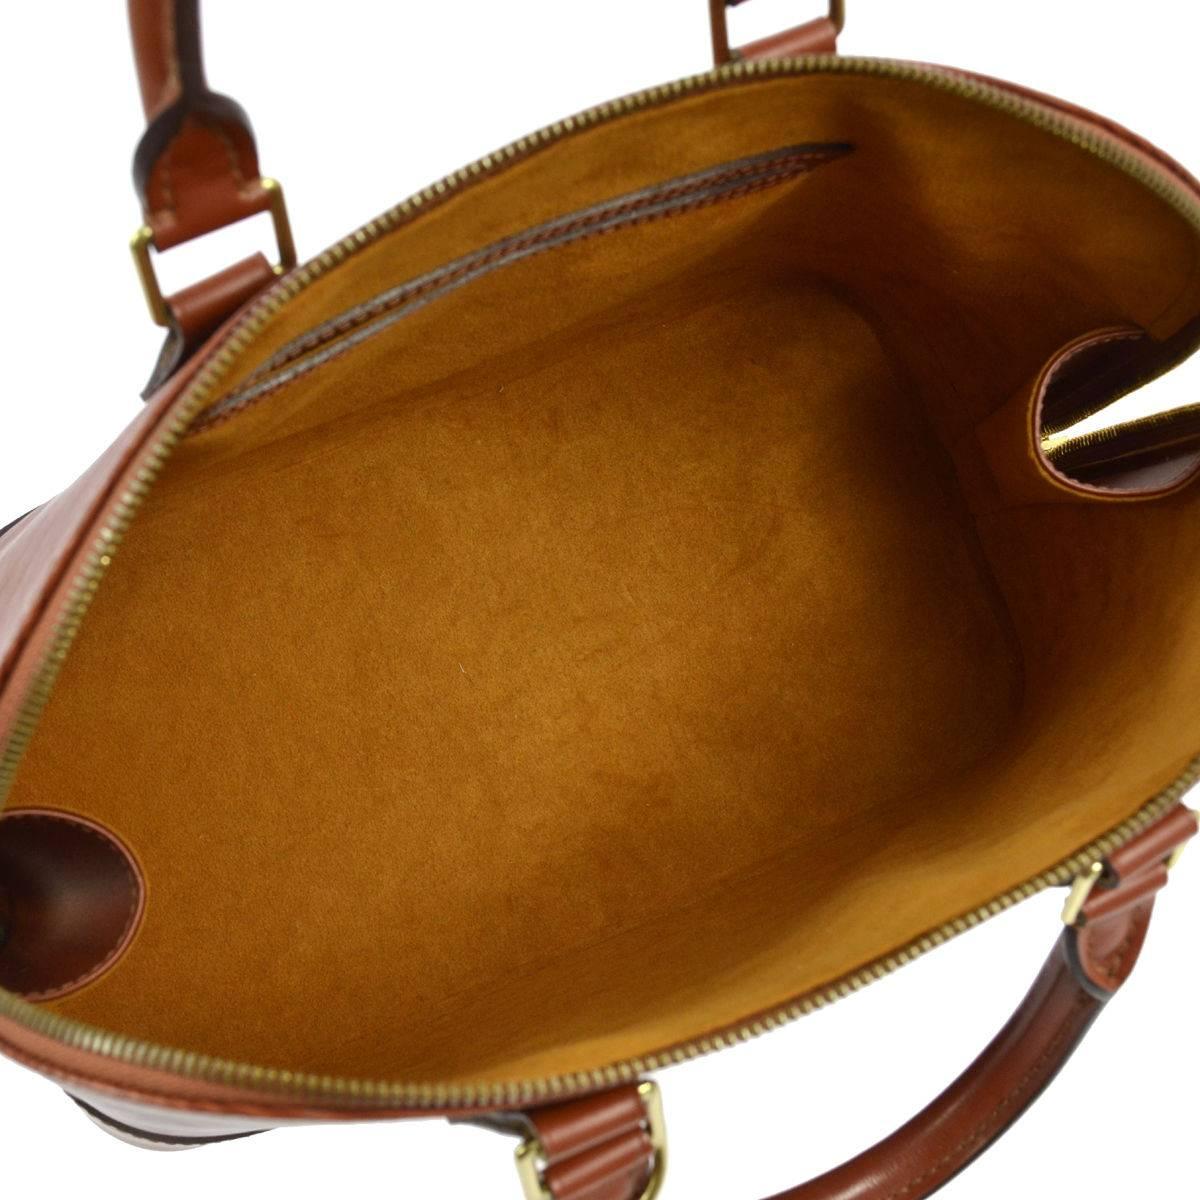 Women's Louis Vuitton Cognac Leather Top Handle Tote Satchel Bag